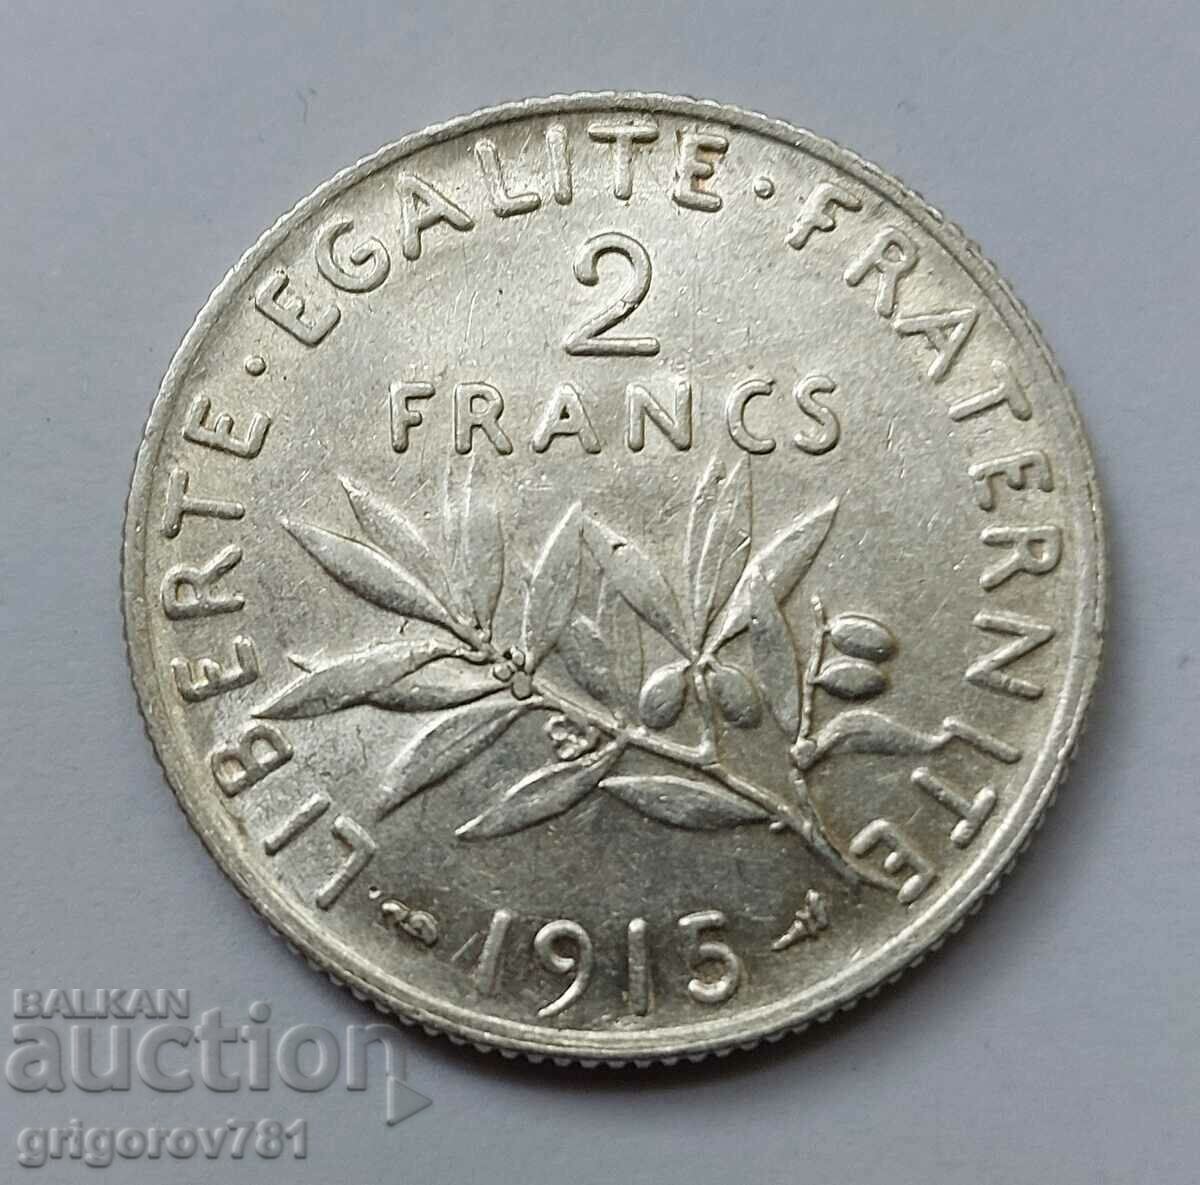 2 Franci Argint Franta 1915 - Moneda de argint #70